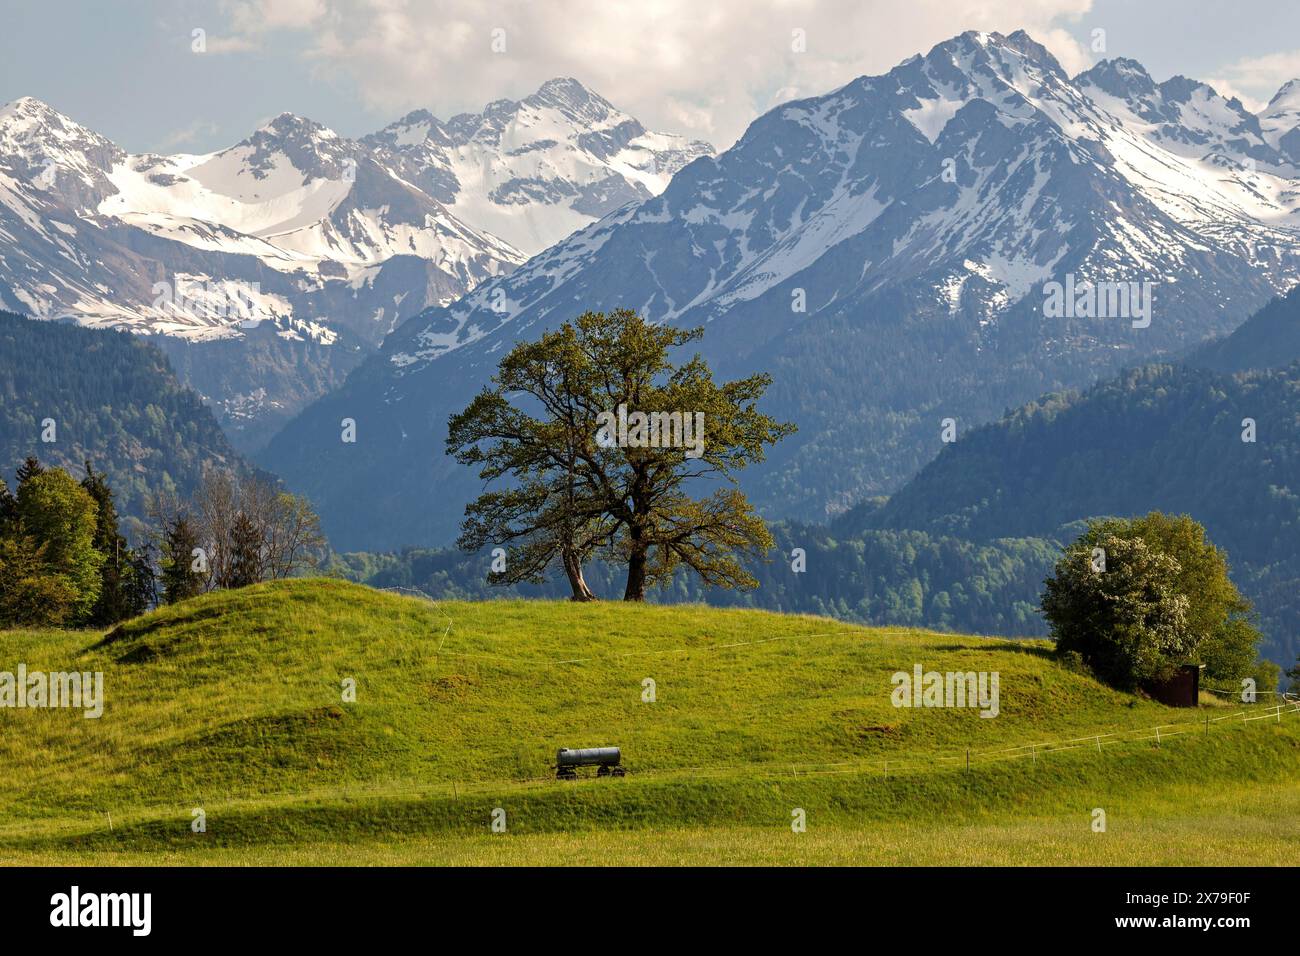 Groupe d'arbres au printemps, montagnes enneigées des Alpes Allgaeu en arrière-plan, près de Schoellang, Oberallgaeu, Allgaeu, Bavière, Allemagne Banque D'Images